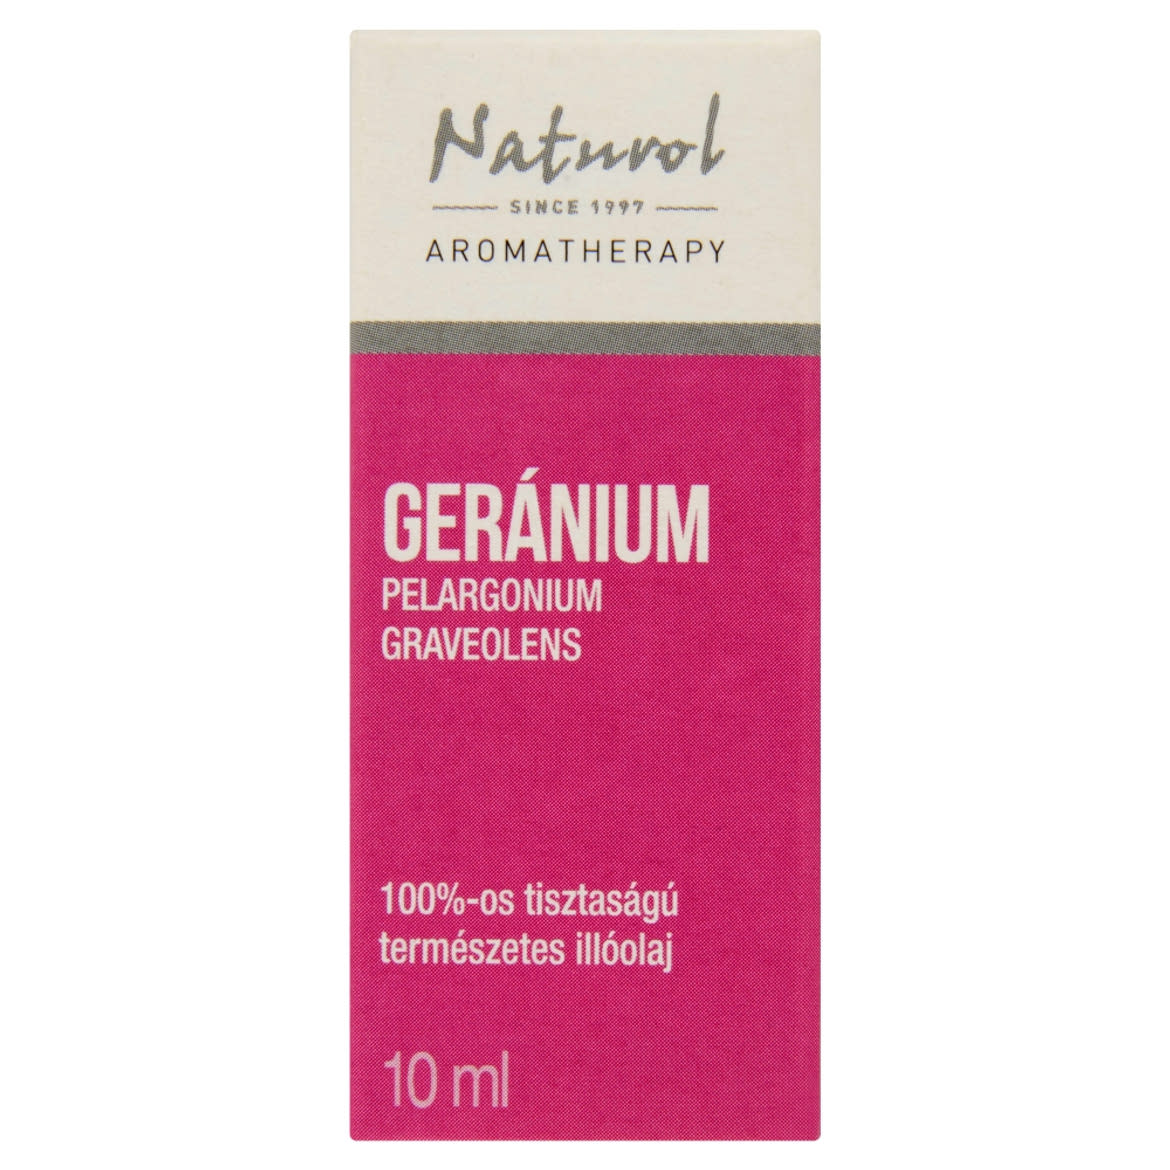 Naturol Aromatherapy 100%-os tisztaságú természetes geránium illóolaj